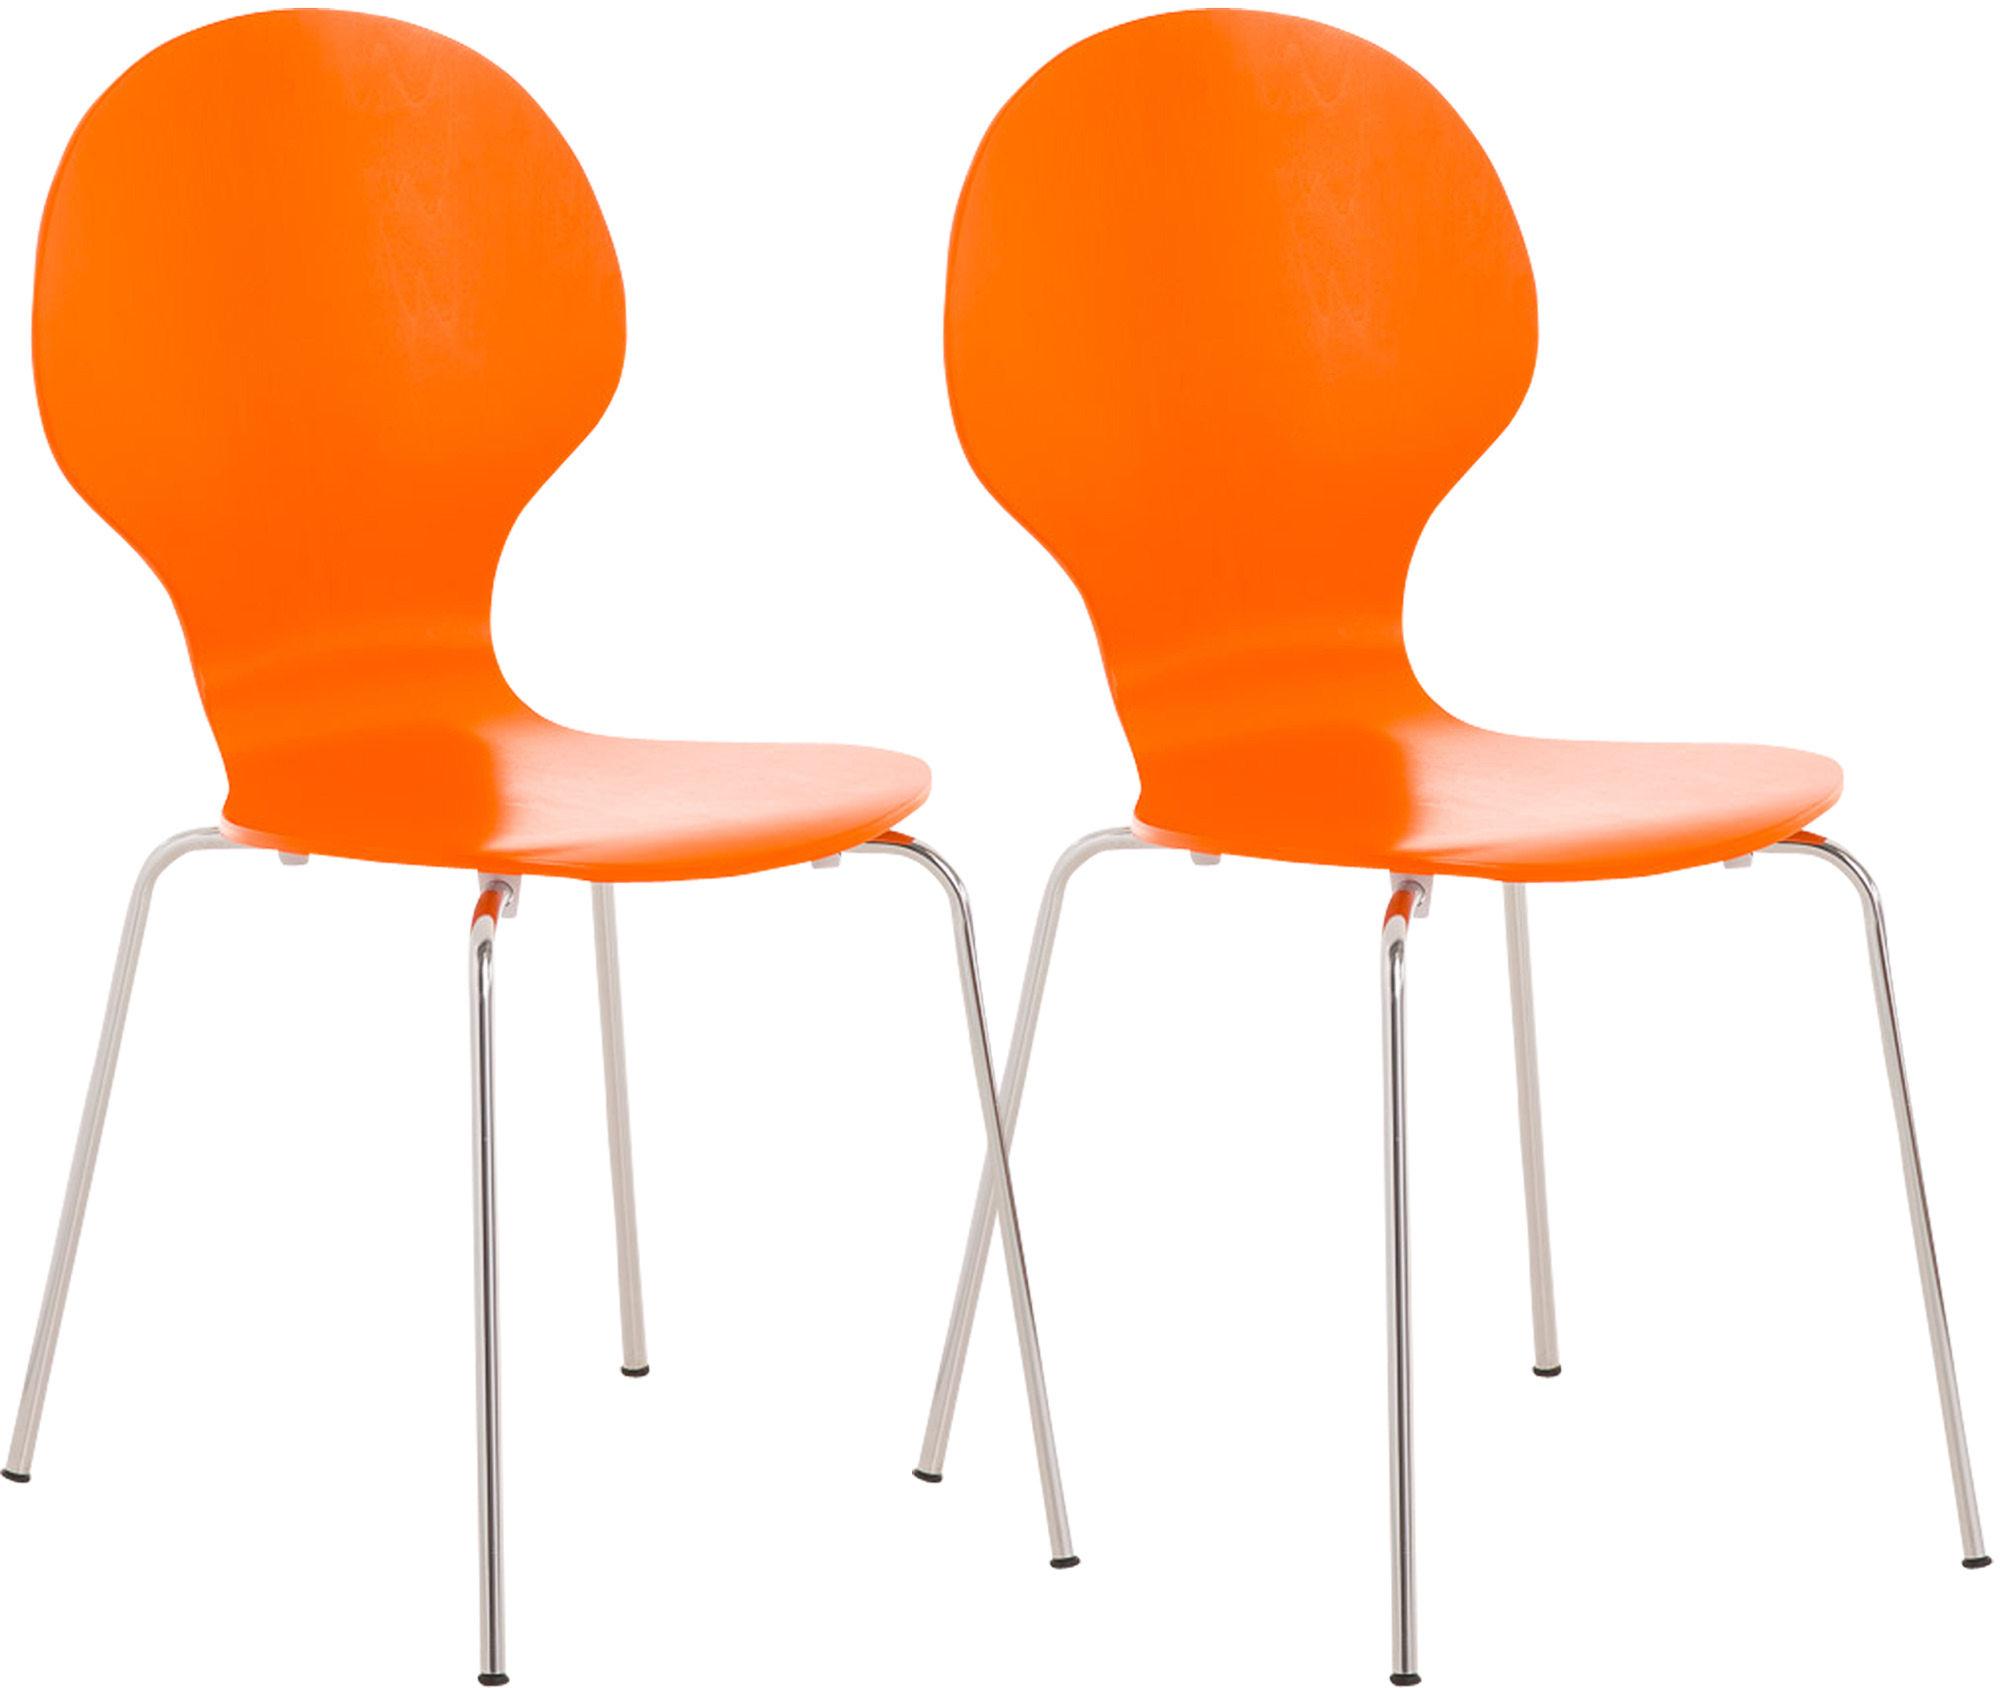 2x Stapelstuhl DIEGO ergonomisch orange